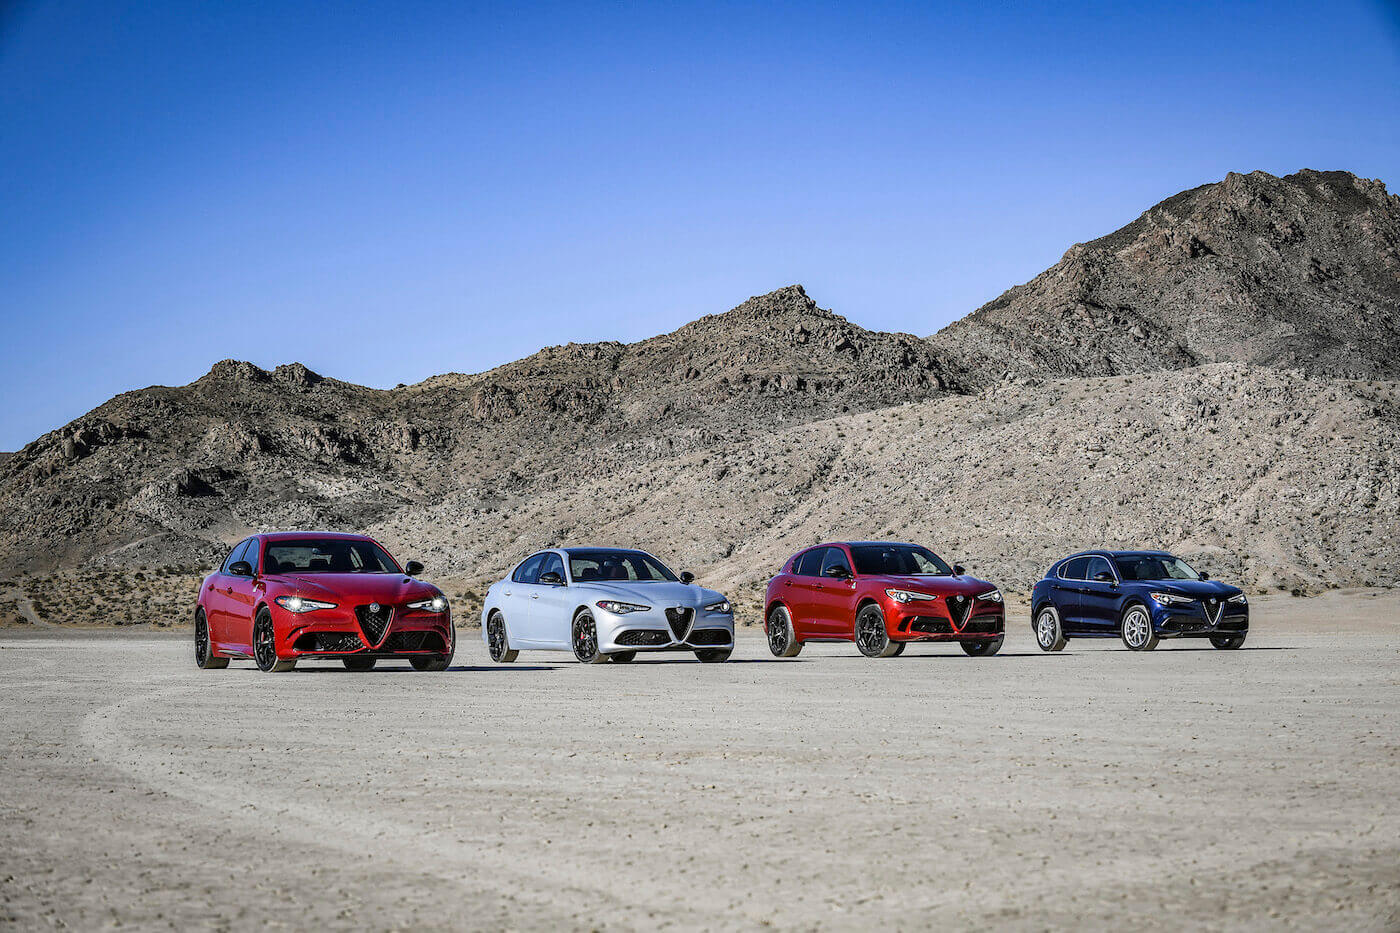 Quatre véhicules Alfa Romeo 2020 incluant deux Giulia et deux Stelvio garés côtes-à-côtes dans un désert